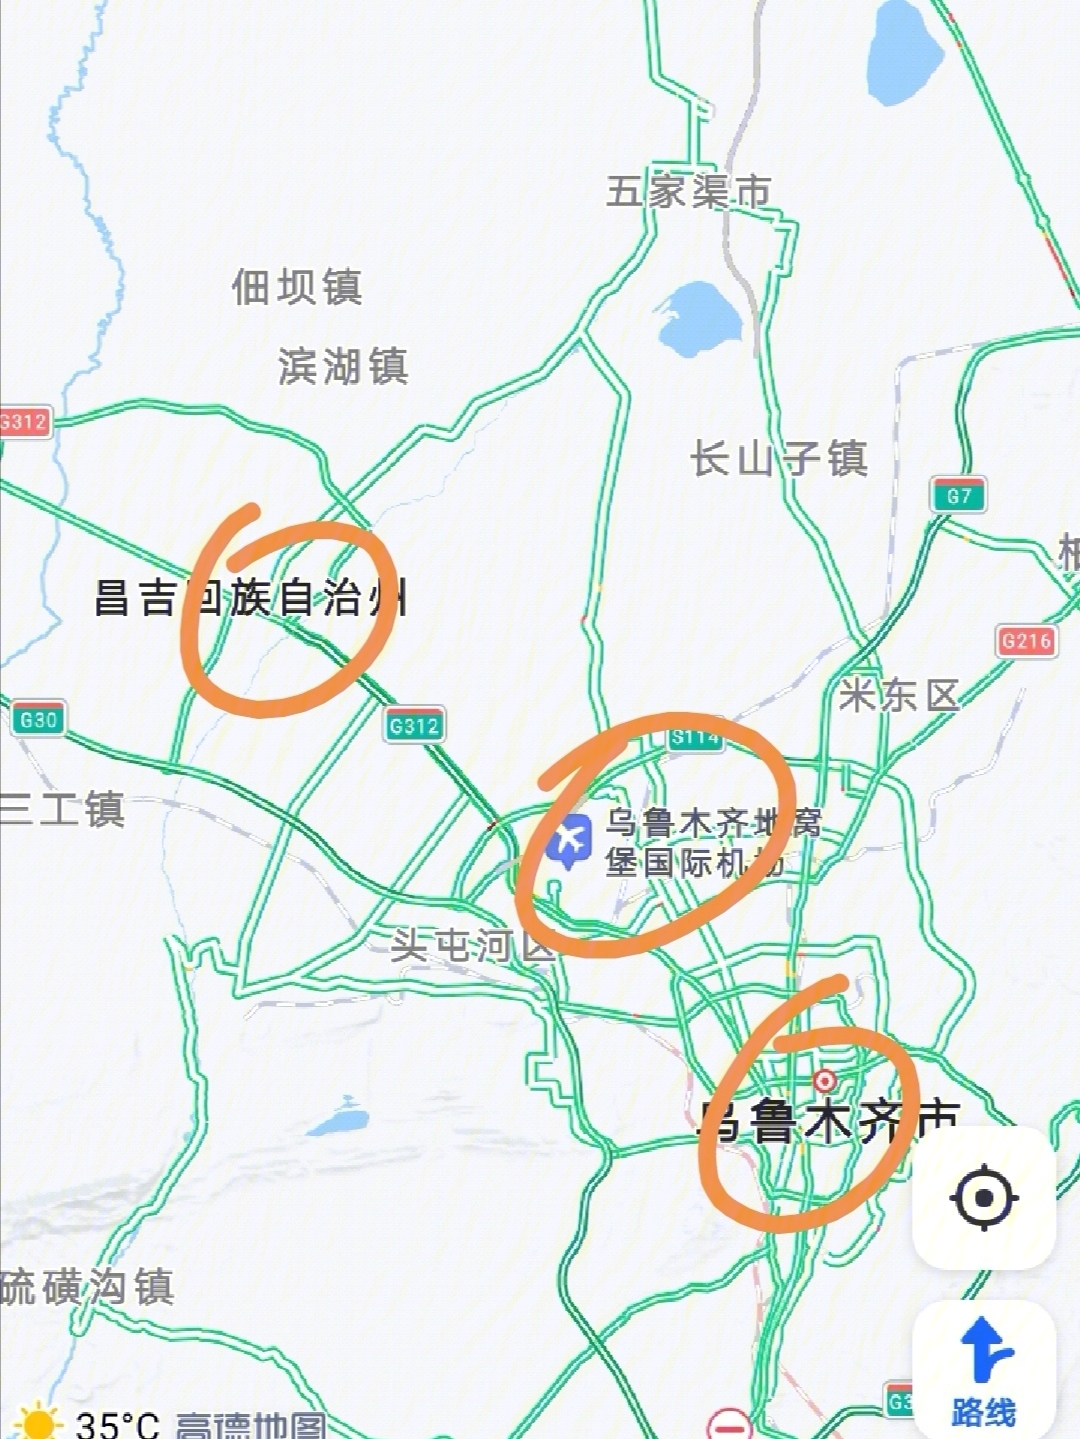 昌吉市地理位置图片